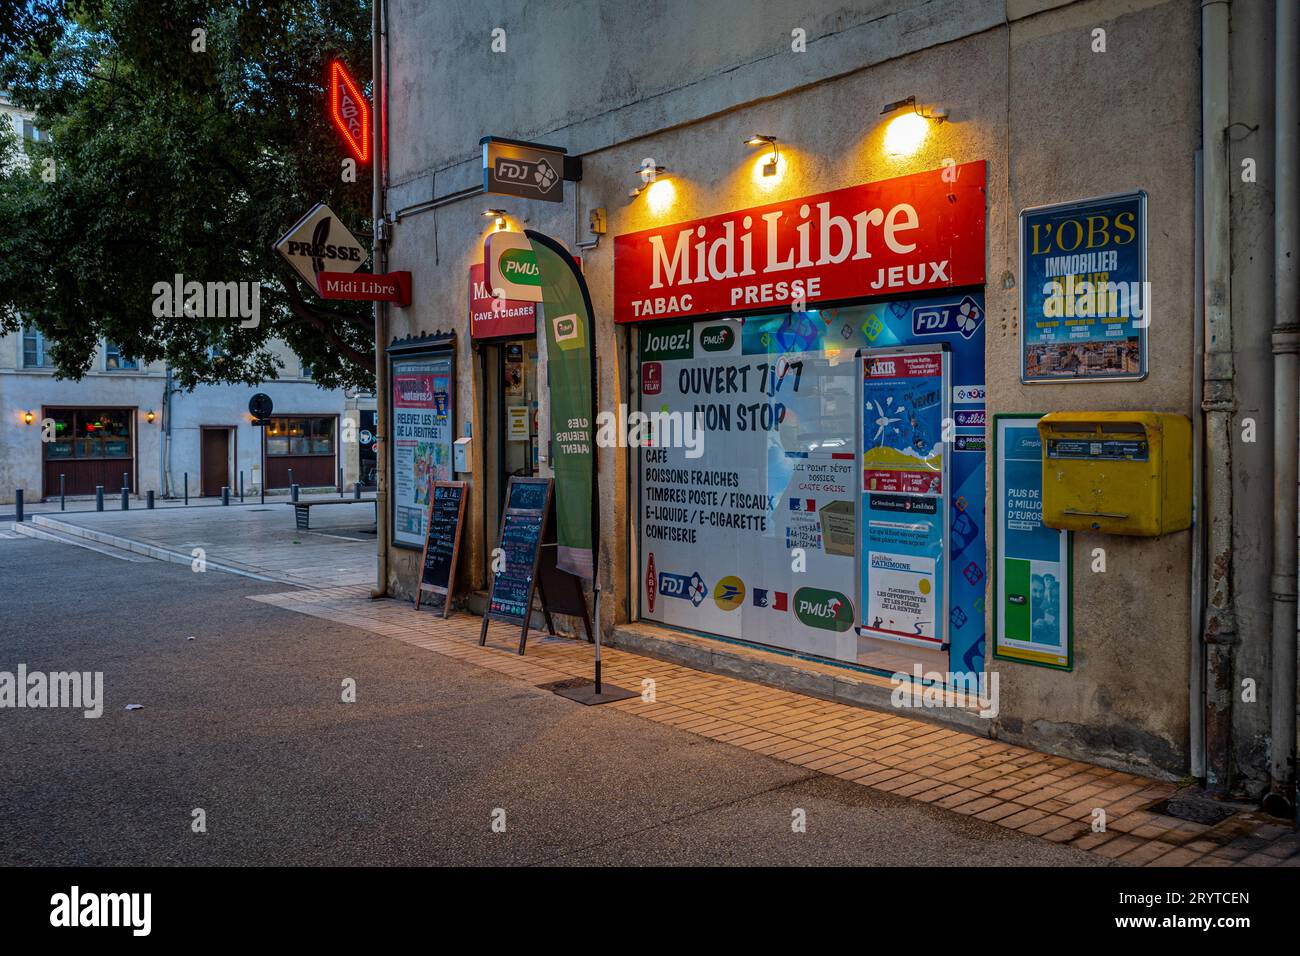 Typisch französisches Tabac in Nimes Frankreich. Tabac Nimes Frankreich. Französische Tabacs verkaufen Tabak, können aber auch ein Café, Buchmacher, Zeitungskiosk und eine Bar sein. Stockfoto